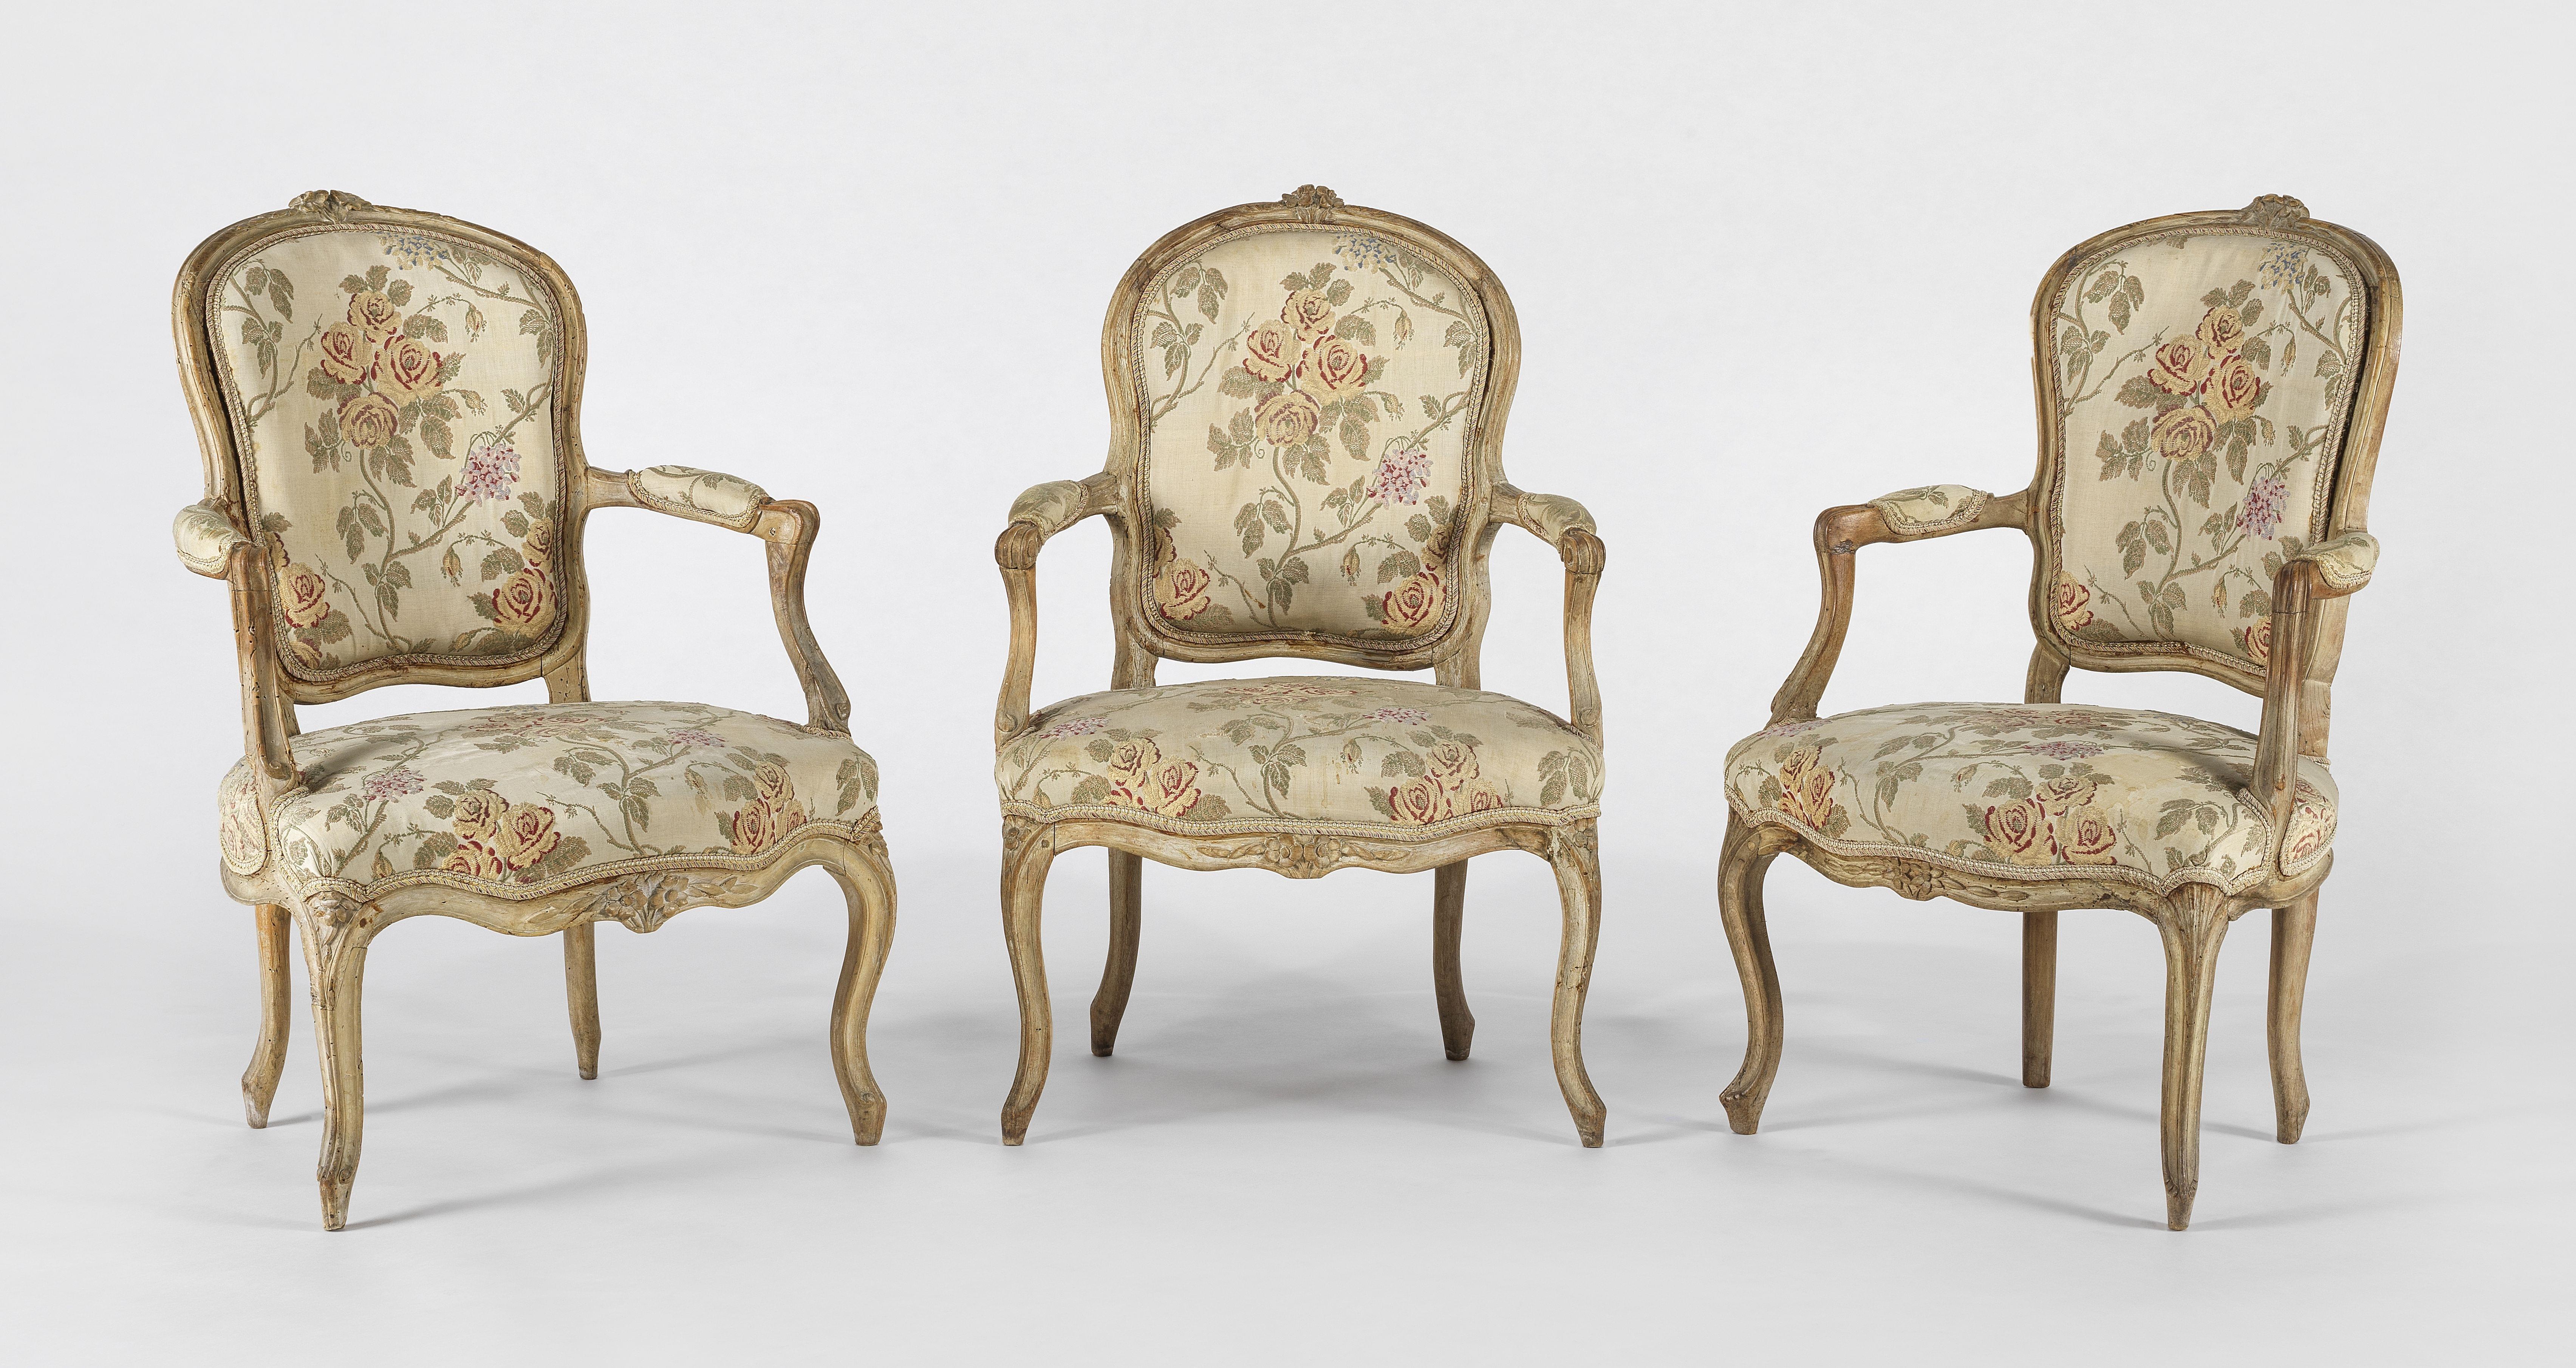 Suite de trois fauteuils cabriolets d'époque Louis XV